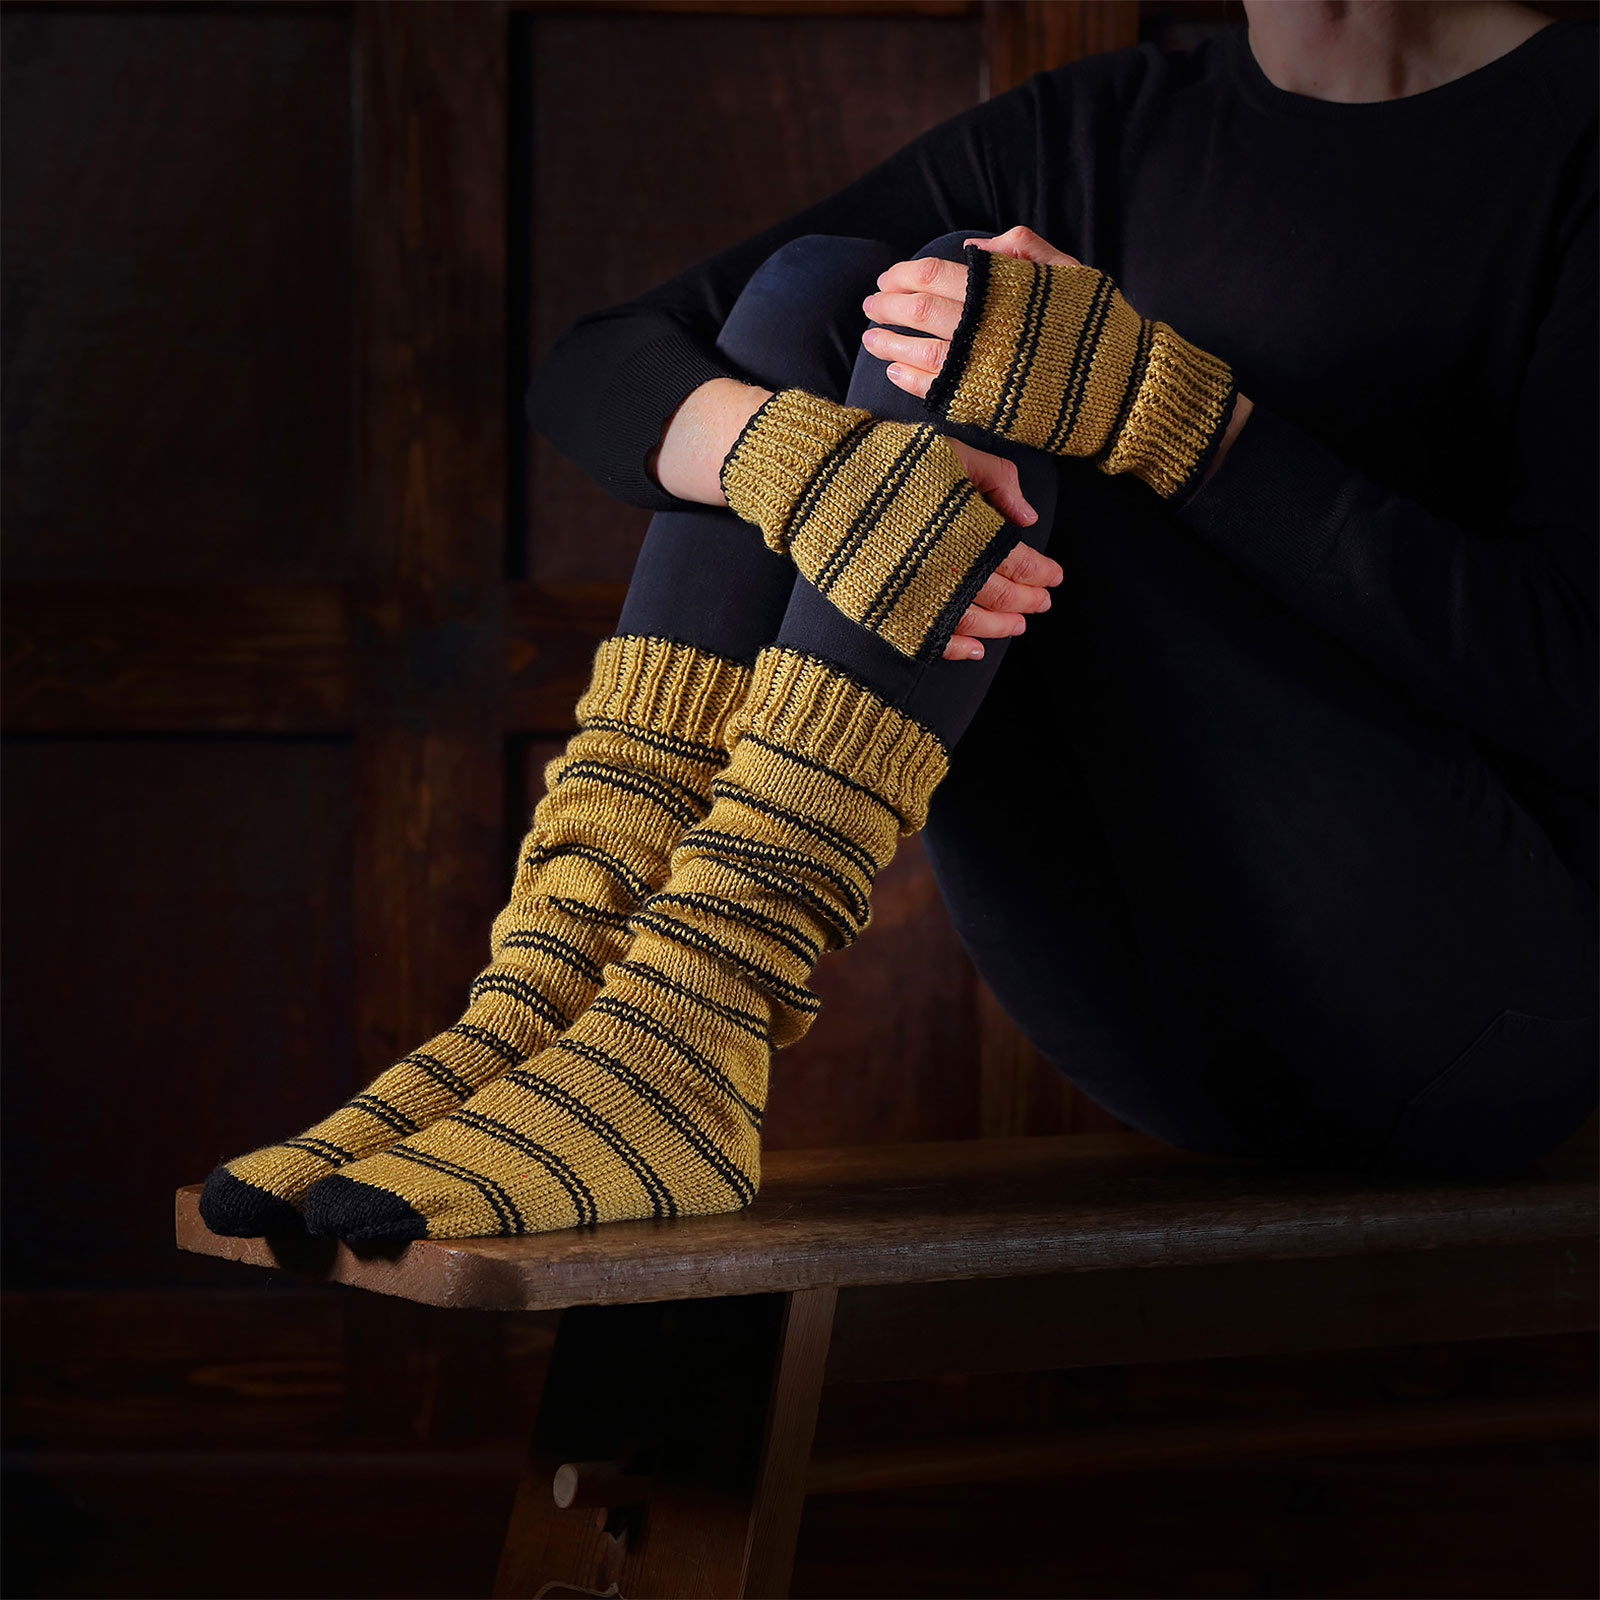 Harry Potter - Hufflepuff Gloves & Socks Knitting Set